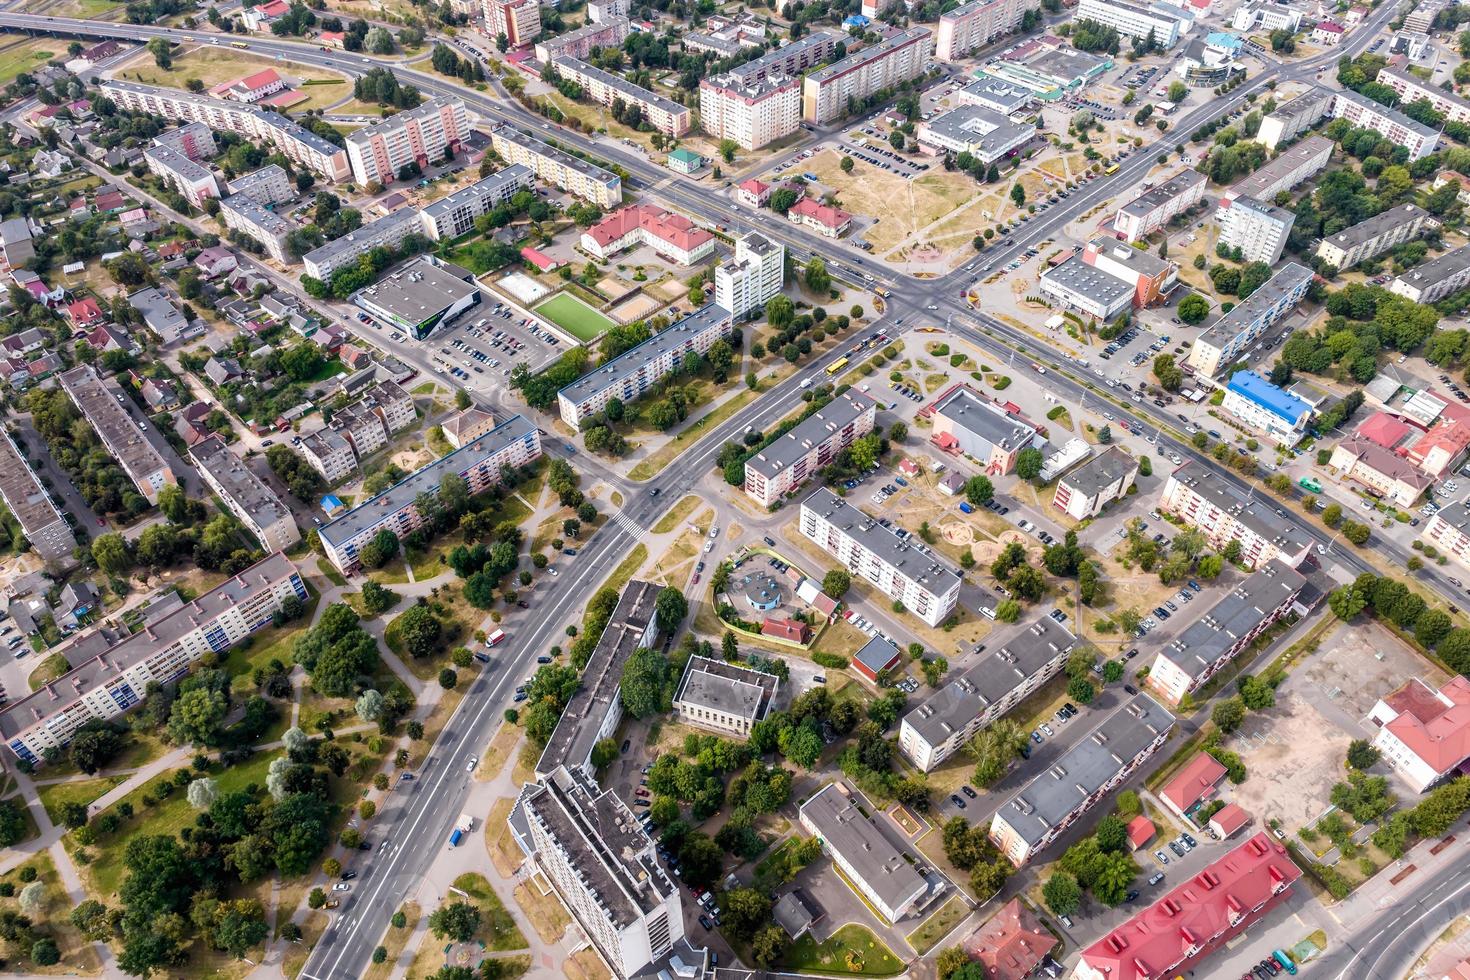 vista panorámica desde una gran altura de una pequeña ciudad provincial con un sector privado y edificios de apartamentos de gran altura foto